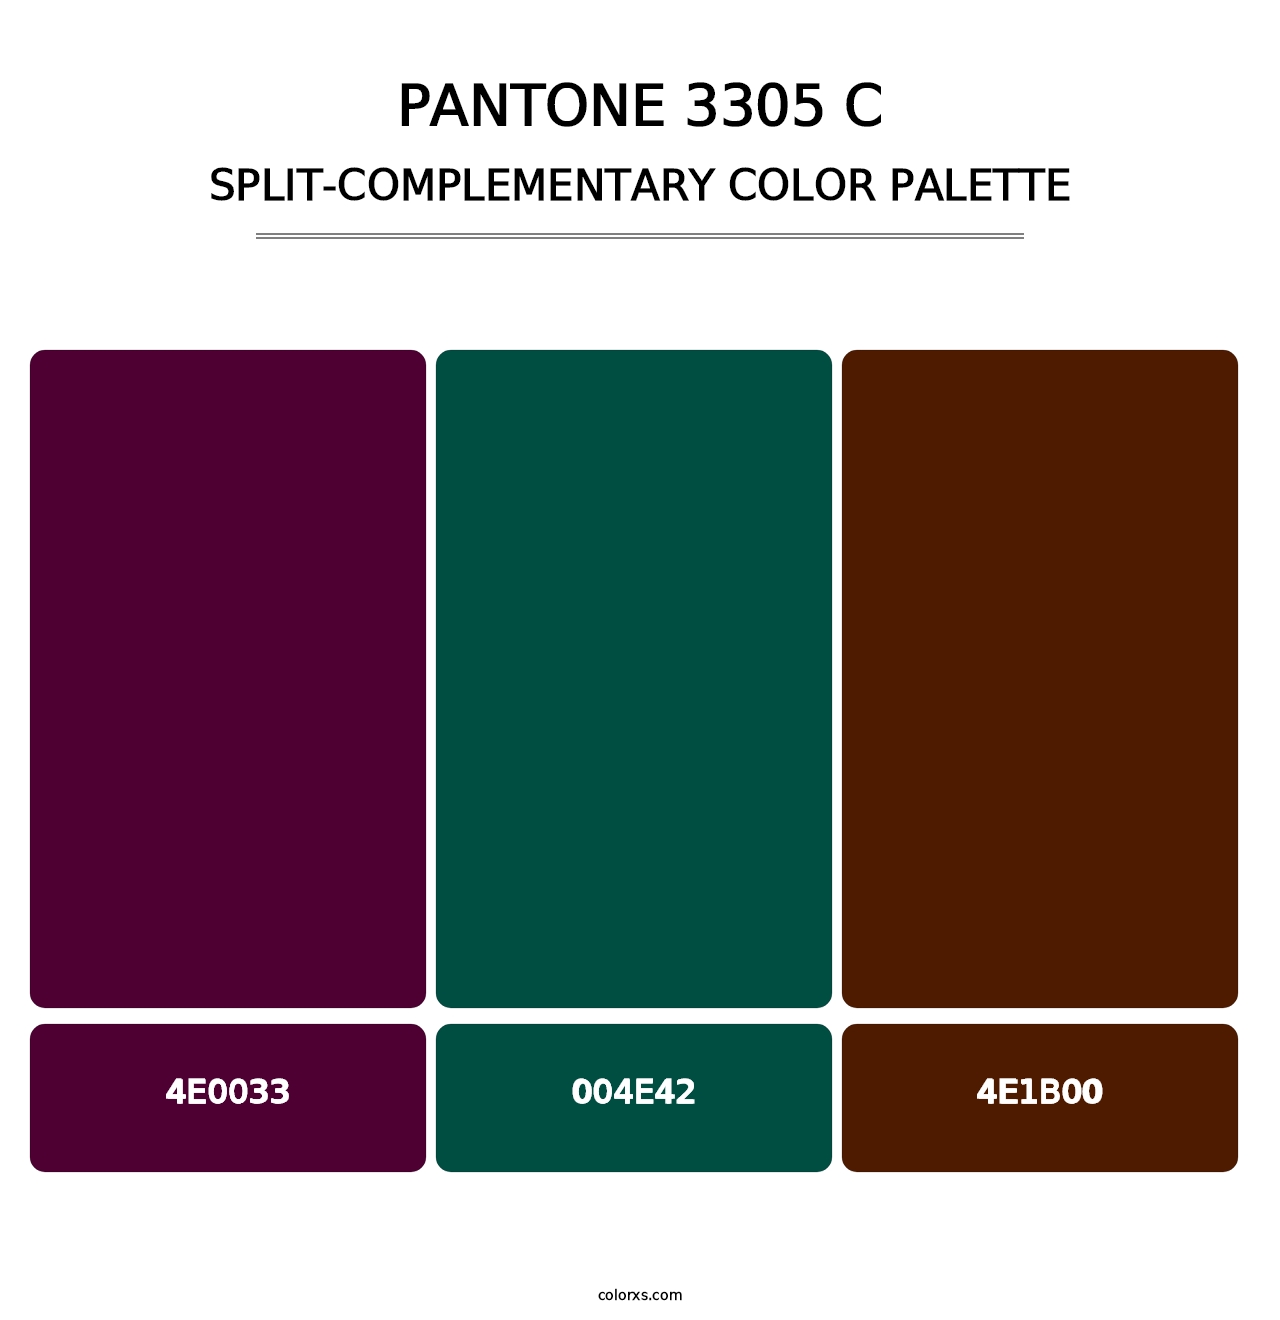 PANTONE 3305 C - Split-Complementary Color Palette